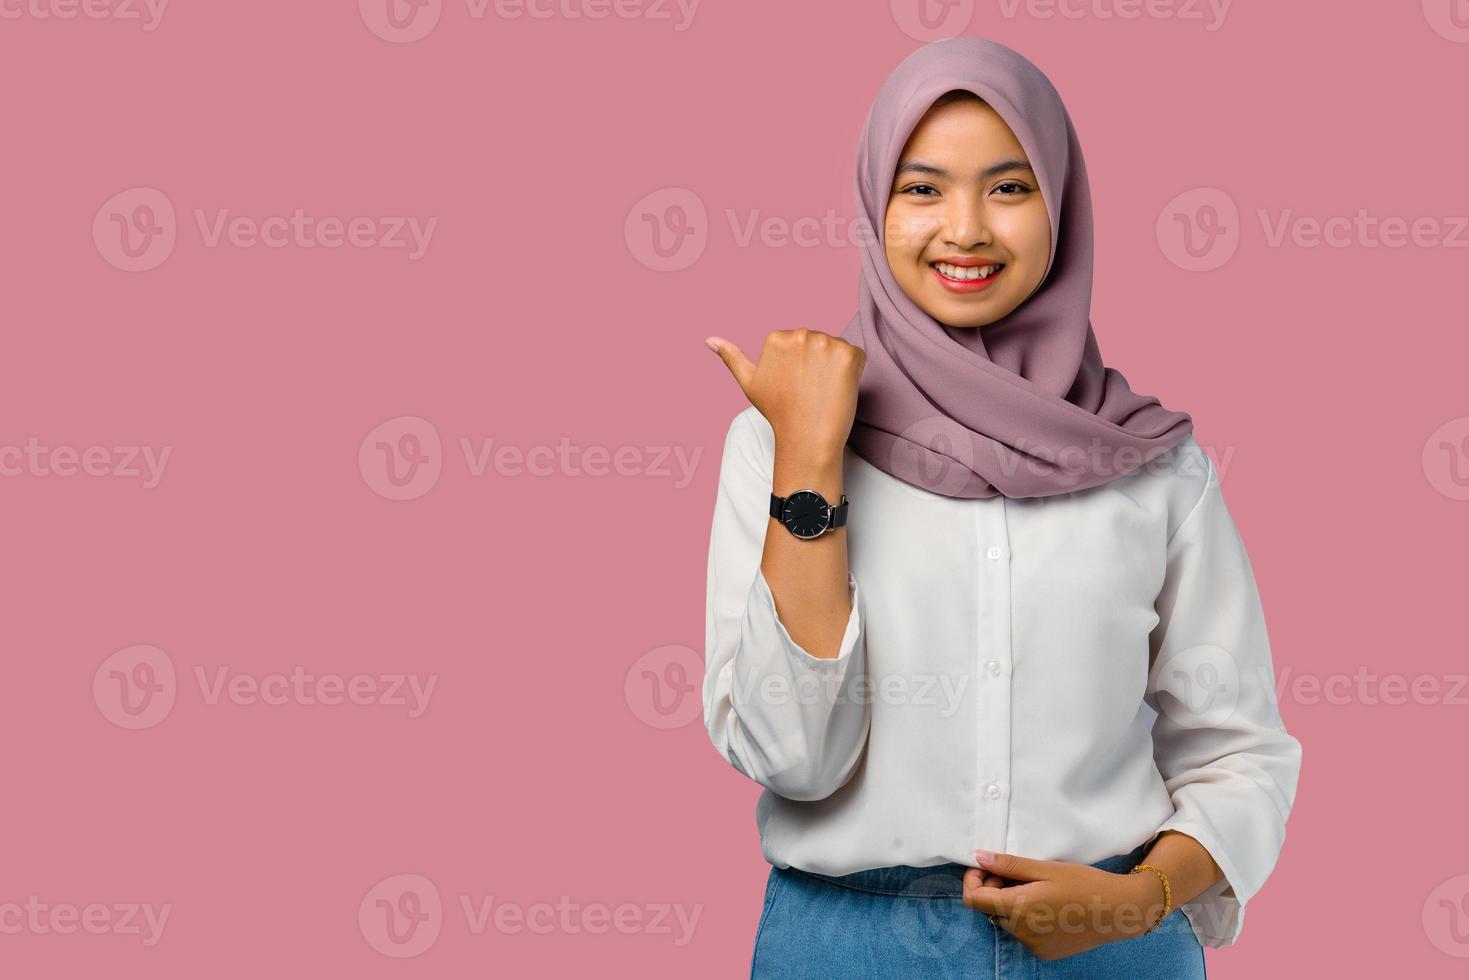 vrouw die een hijab draagt op een roze achtergrond foto